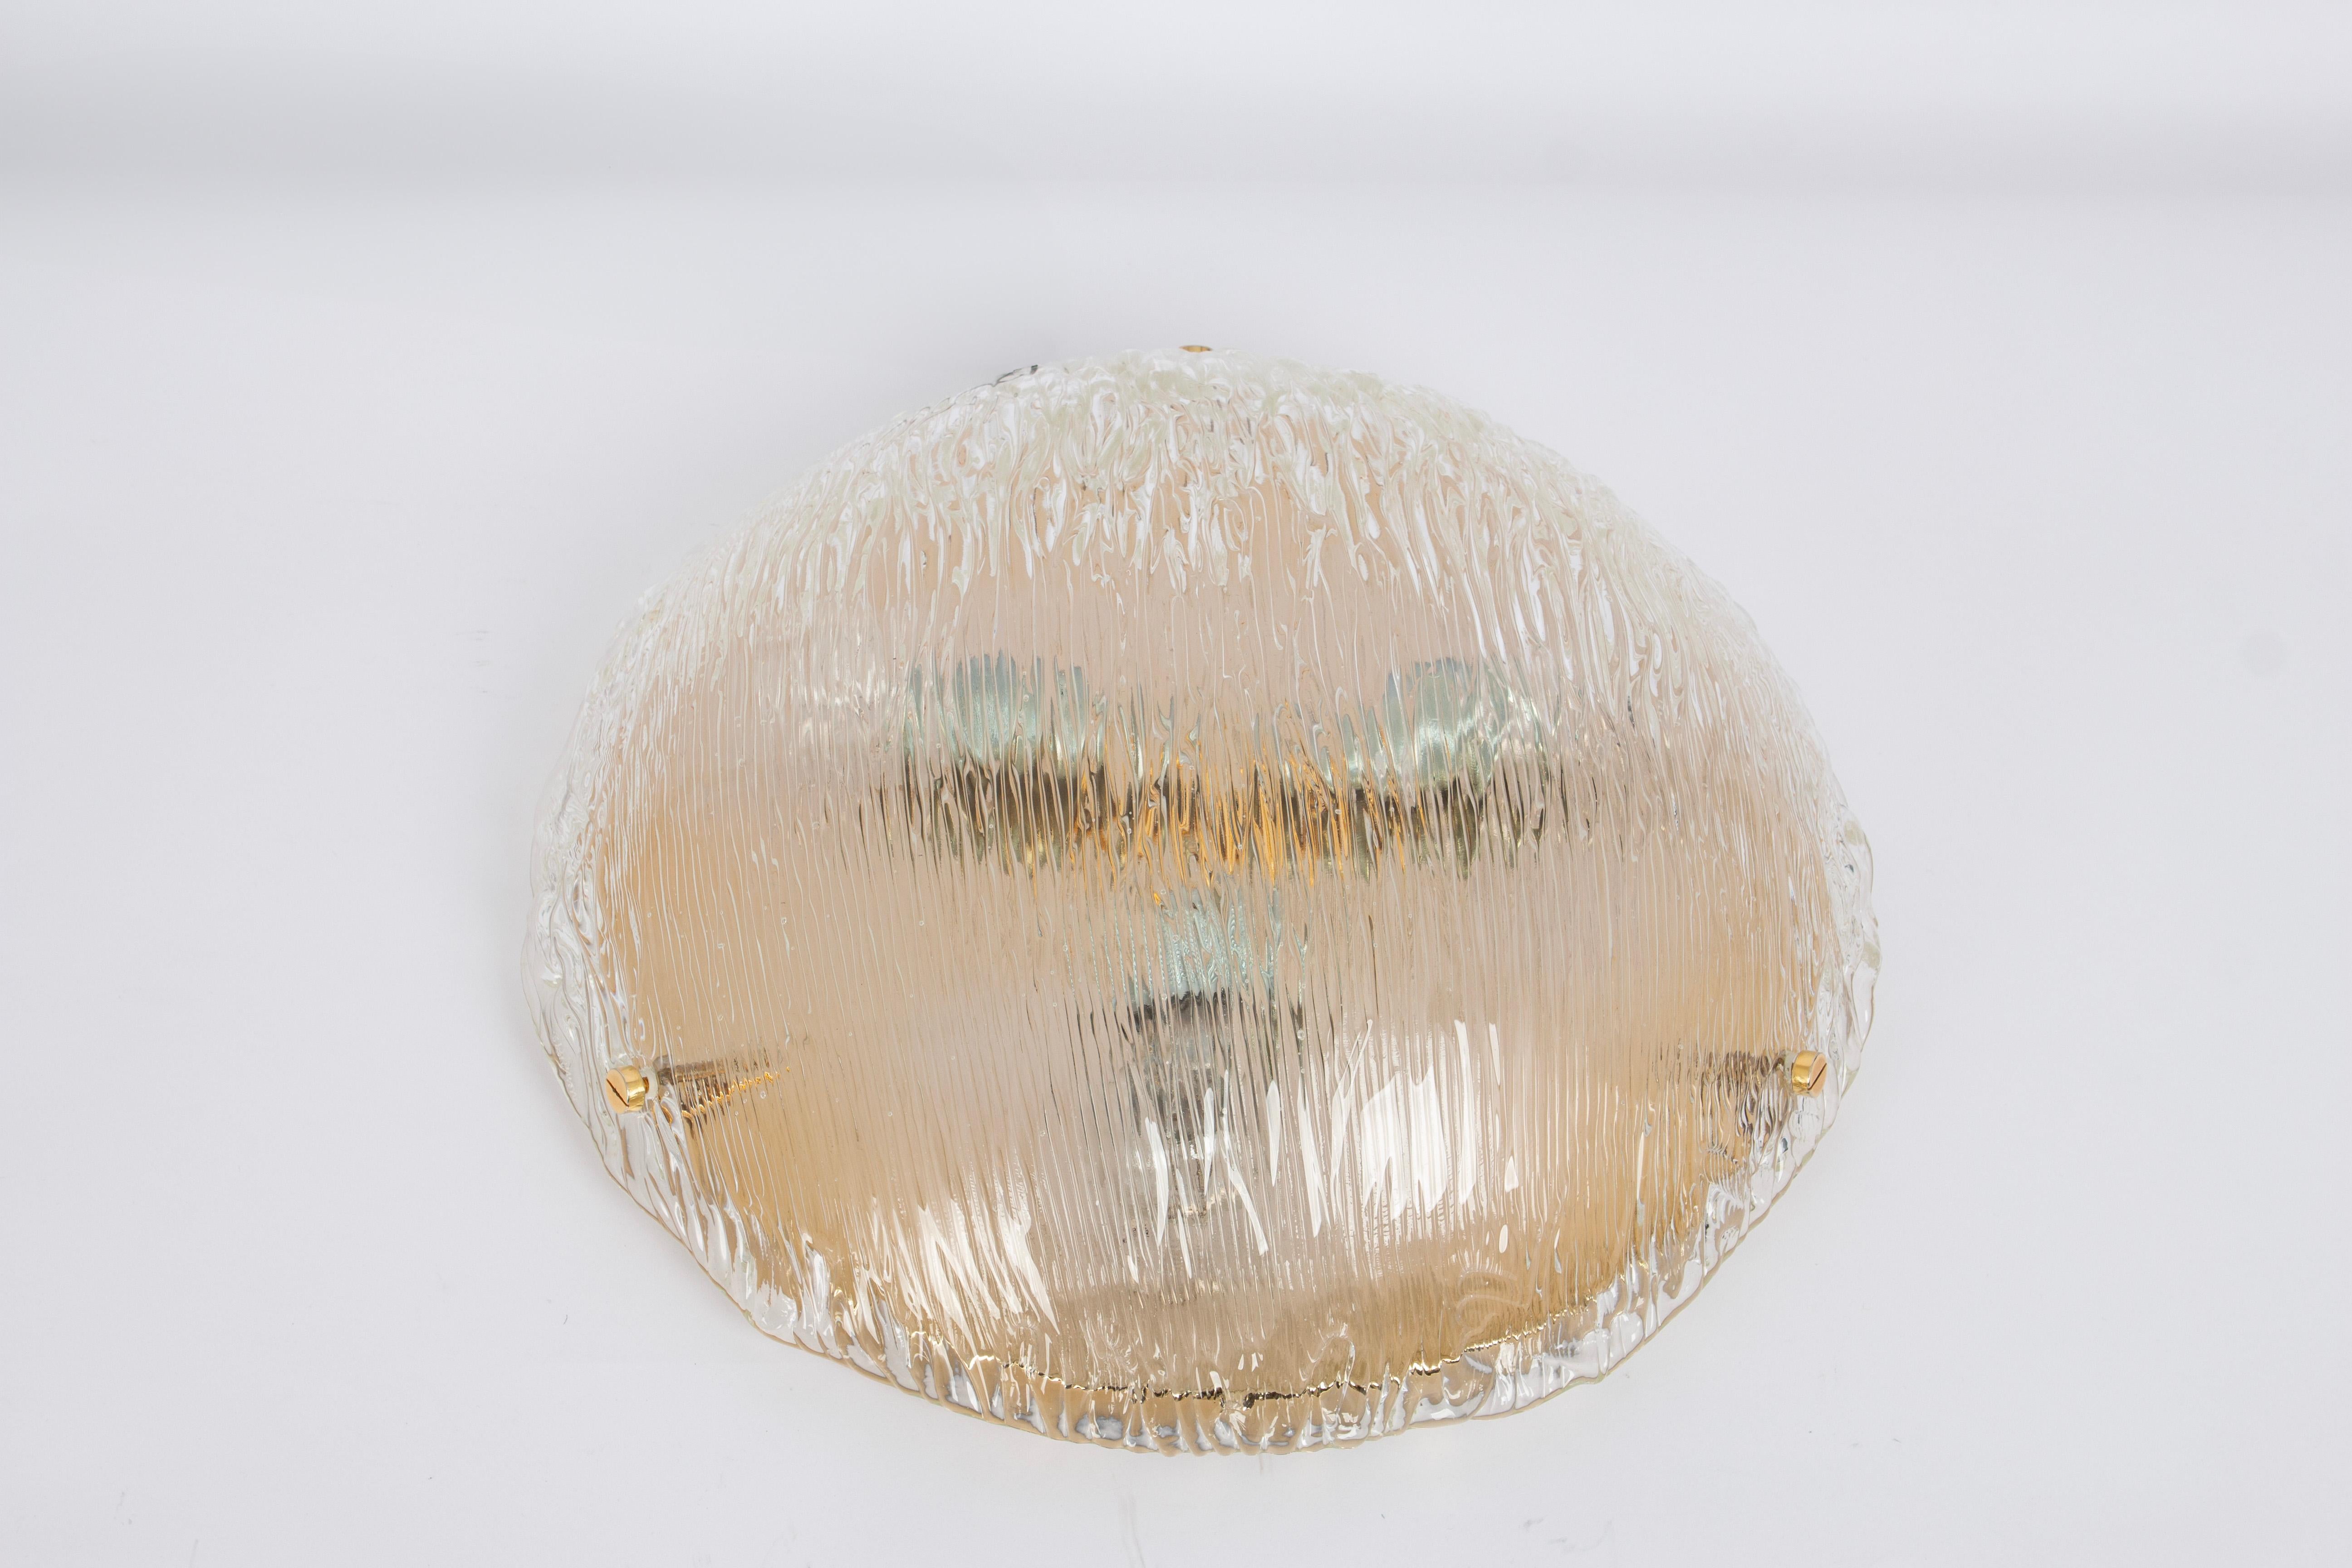 Grands plafonniers Venini attribués à Carlo Scarpa pour Venini, années 1960.
Merveilleux effet de lumière.
Le dôme en verre fortement texturé et légèrement irisé est maintenu en place par un bouton en laiton

De haute qualité et en très bon état.